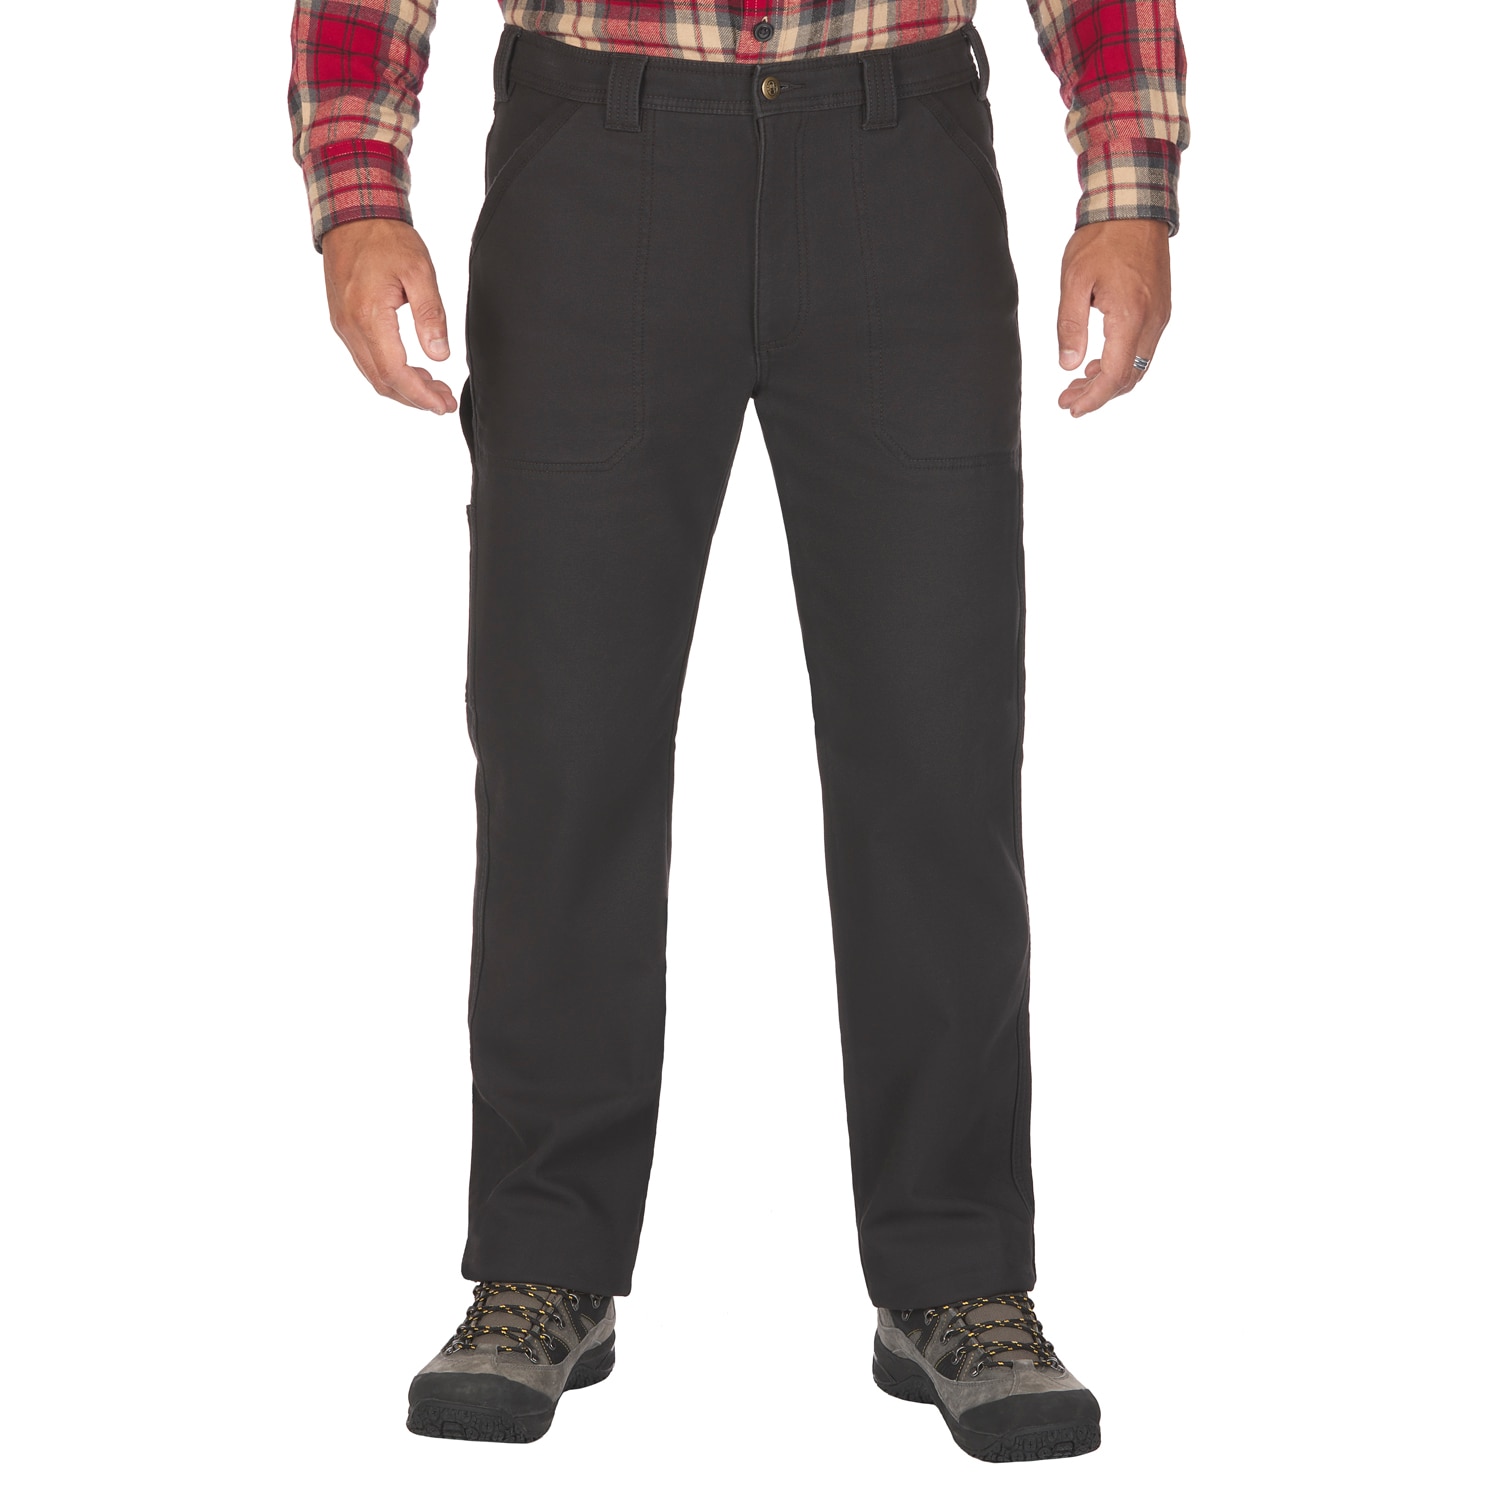 Men's Size 38x32 Coleman Fleece Lined Pants - Men's Clothing & Shoes, Facebook Marketplace